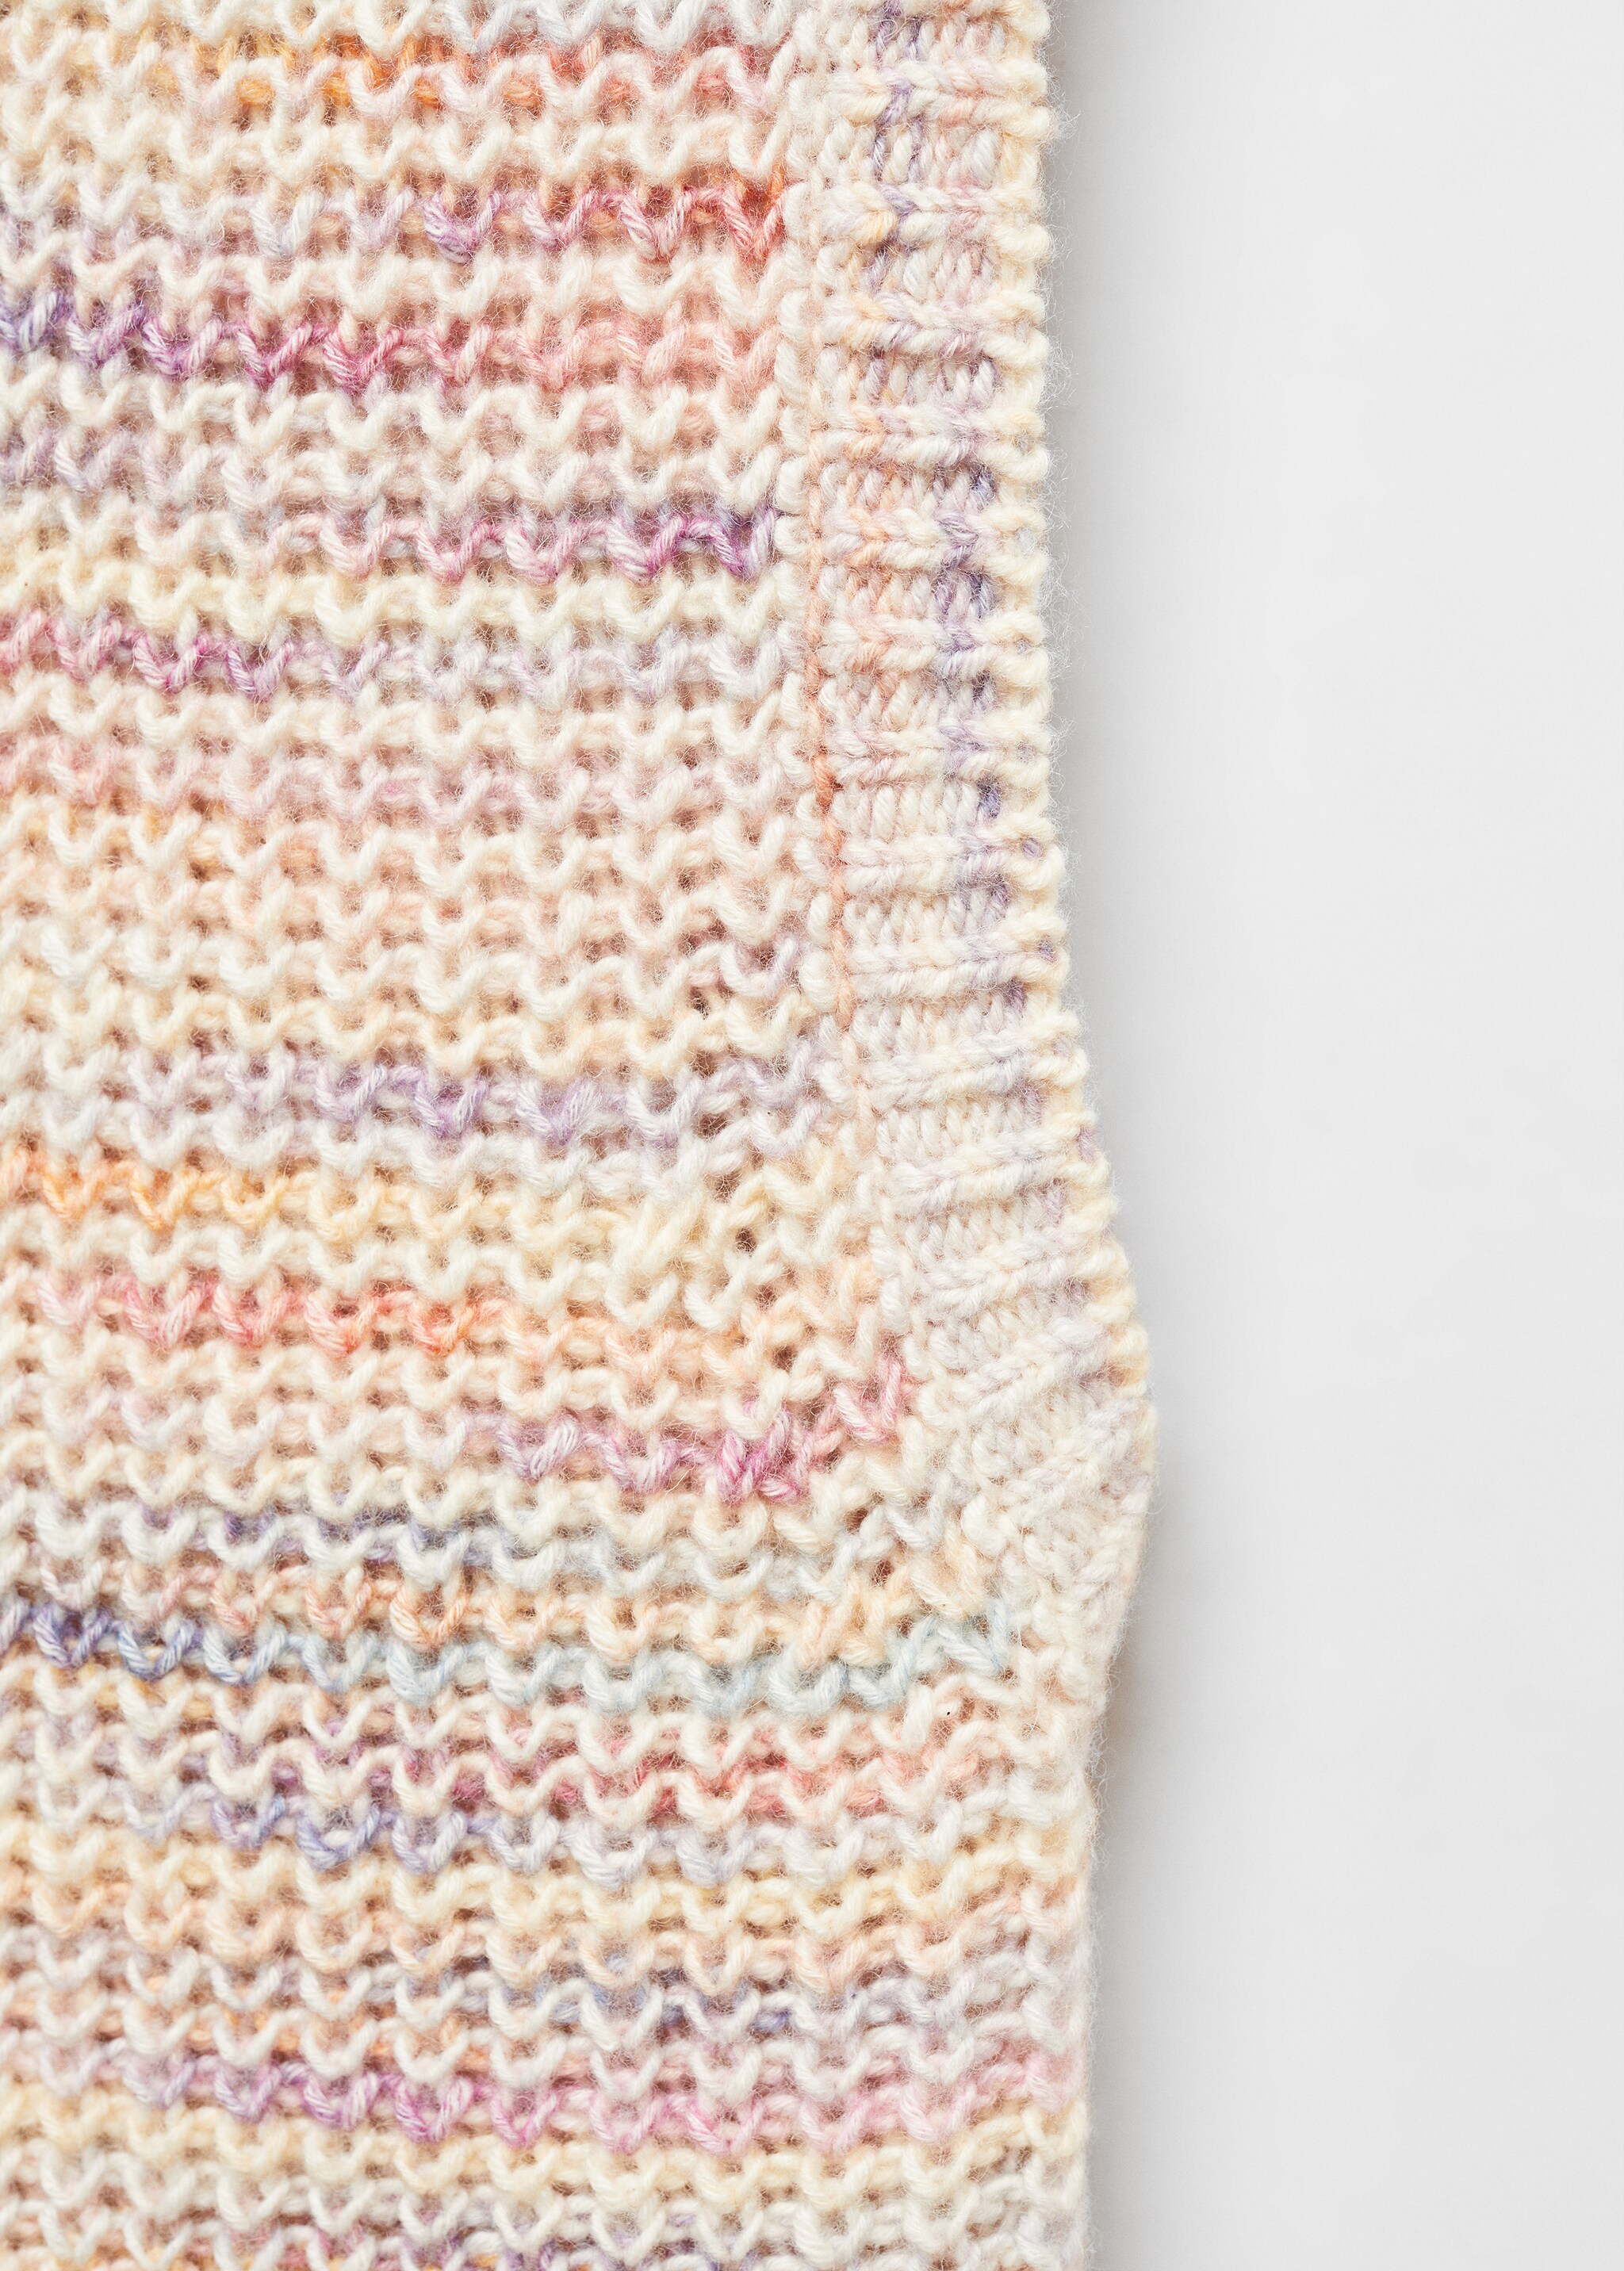 Multi-coloured knitted gilet - Szczegóły artykułu 8